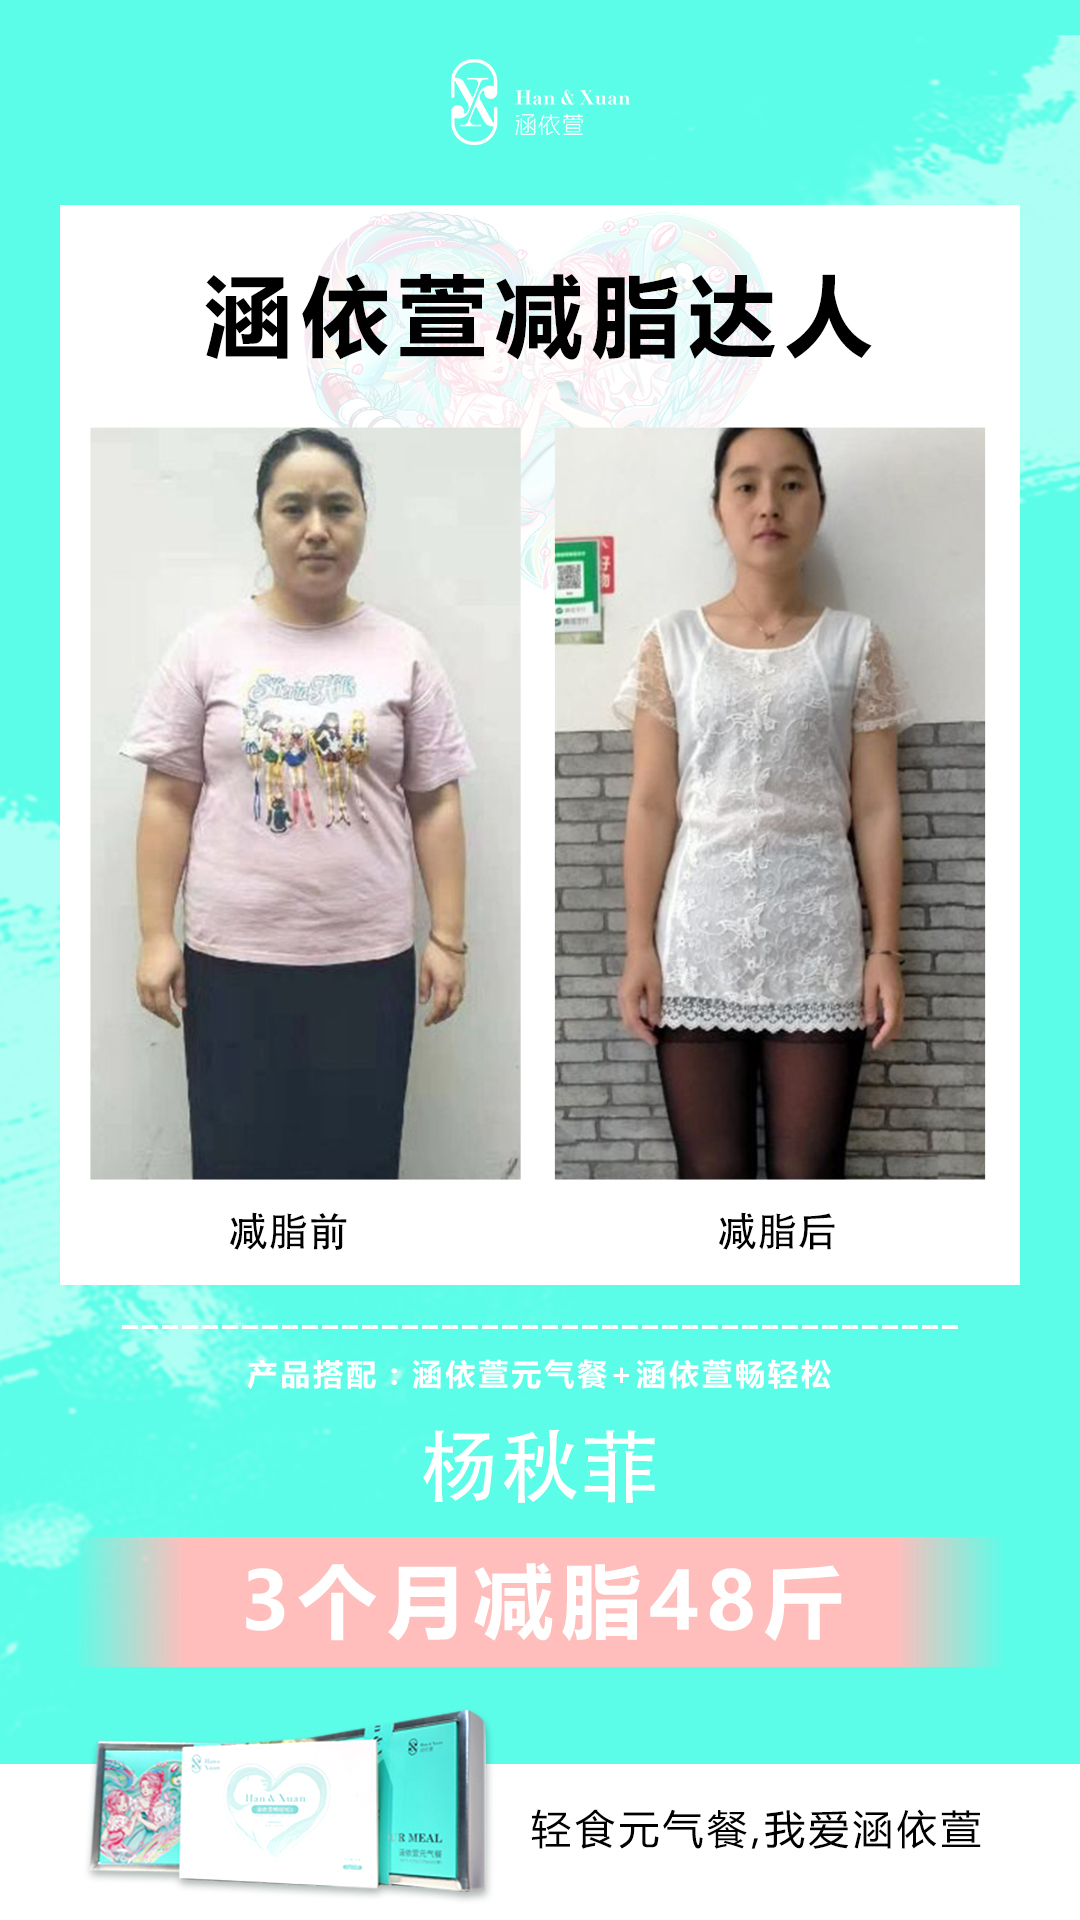 杨秋菲 使用涵依萱元气餐3个月减脂48斤